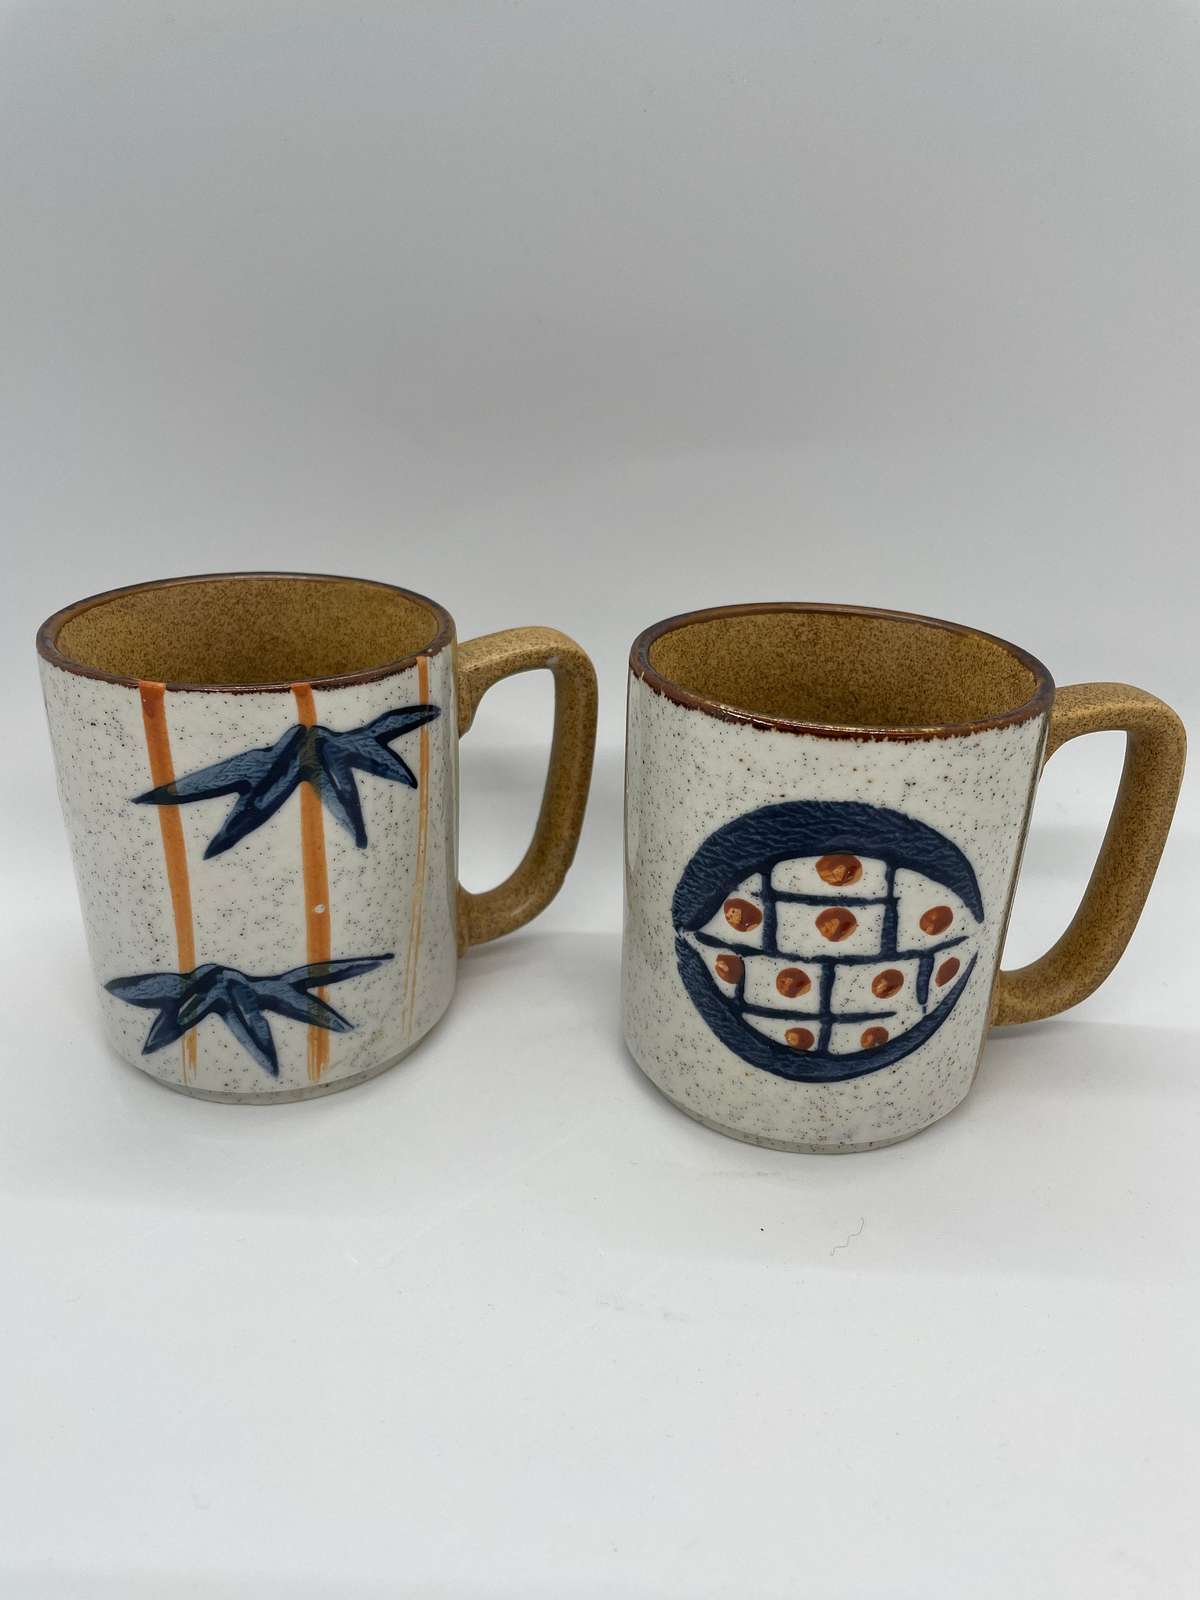 Japanese otagiri coffee mug set of 2 - $19.00